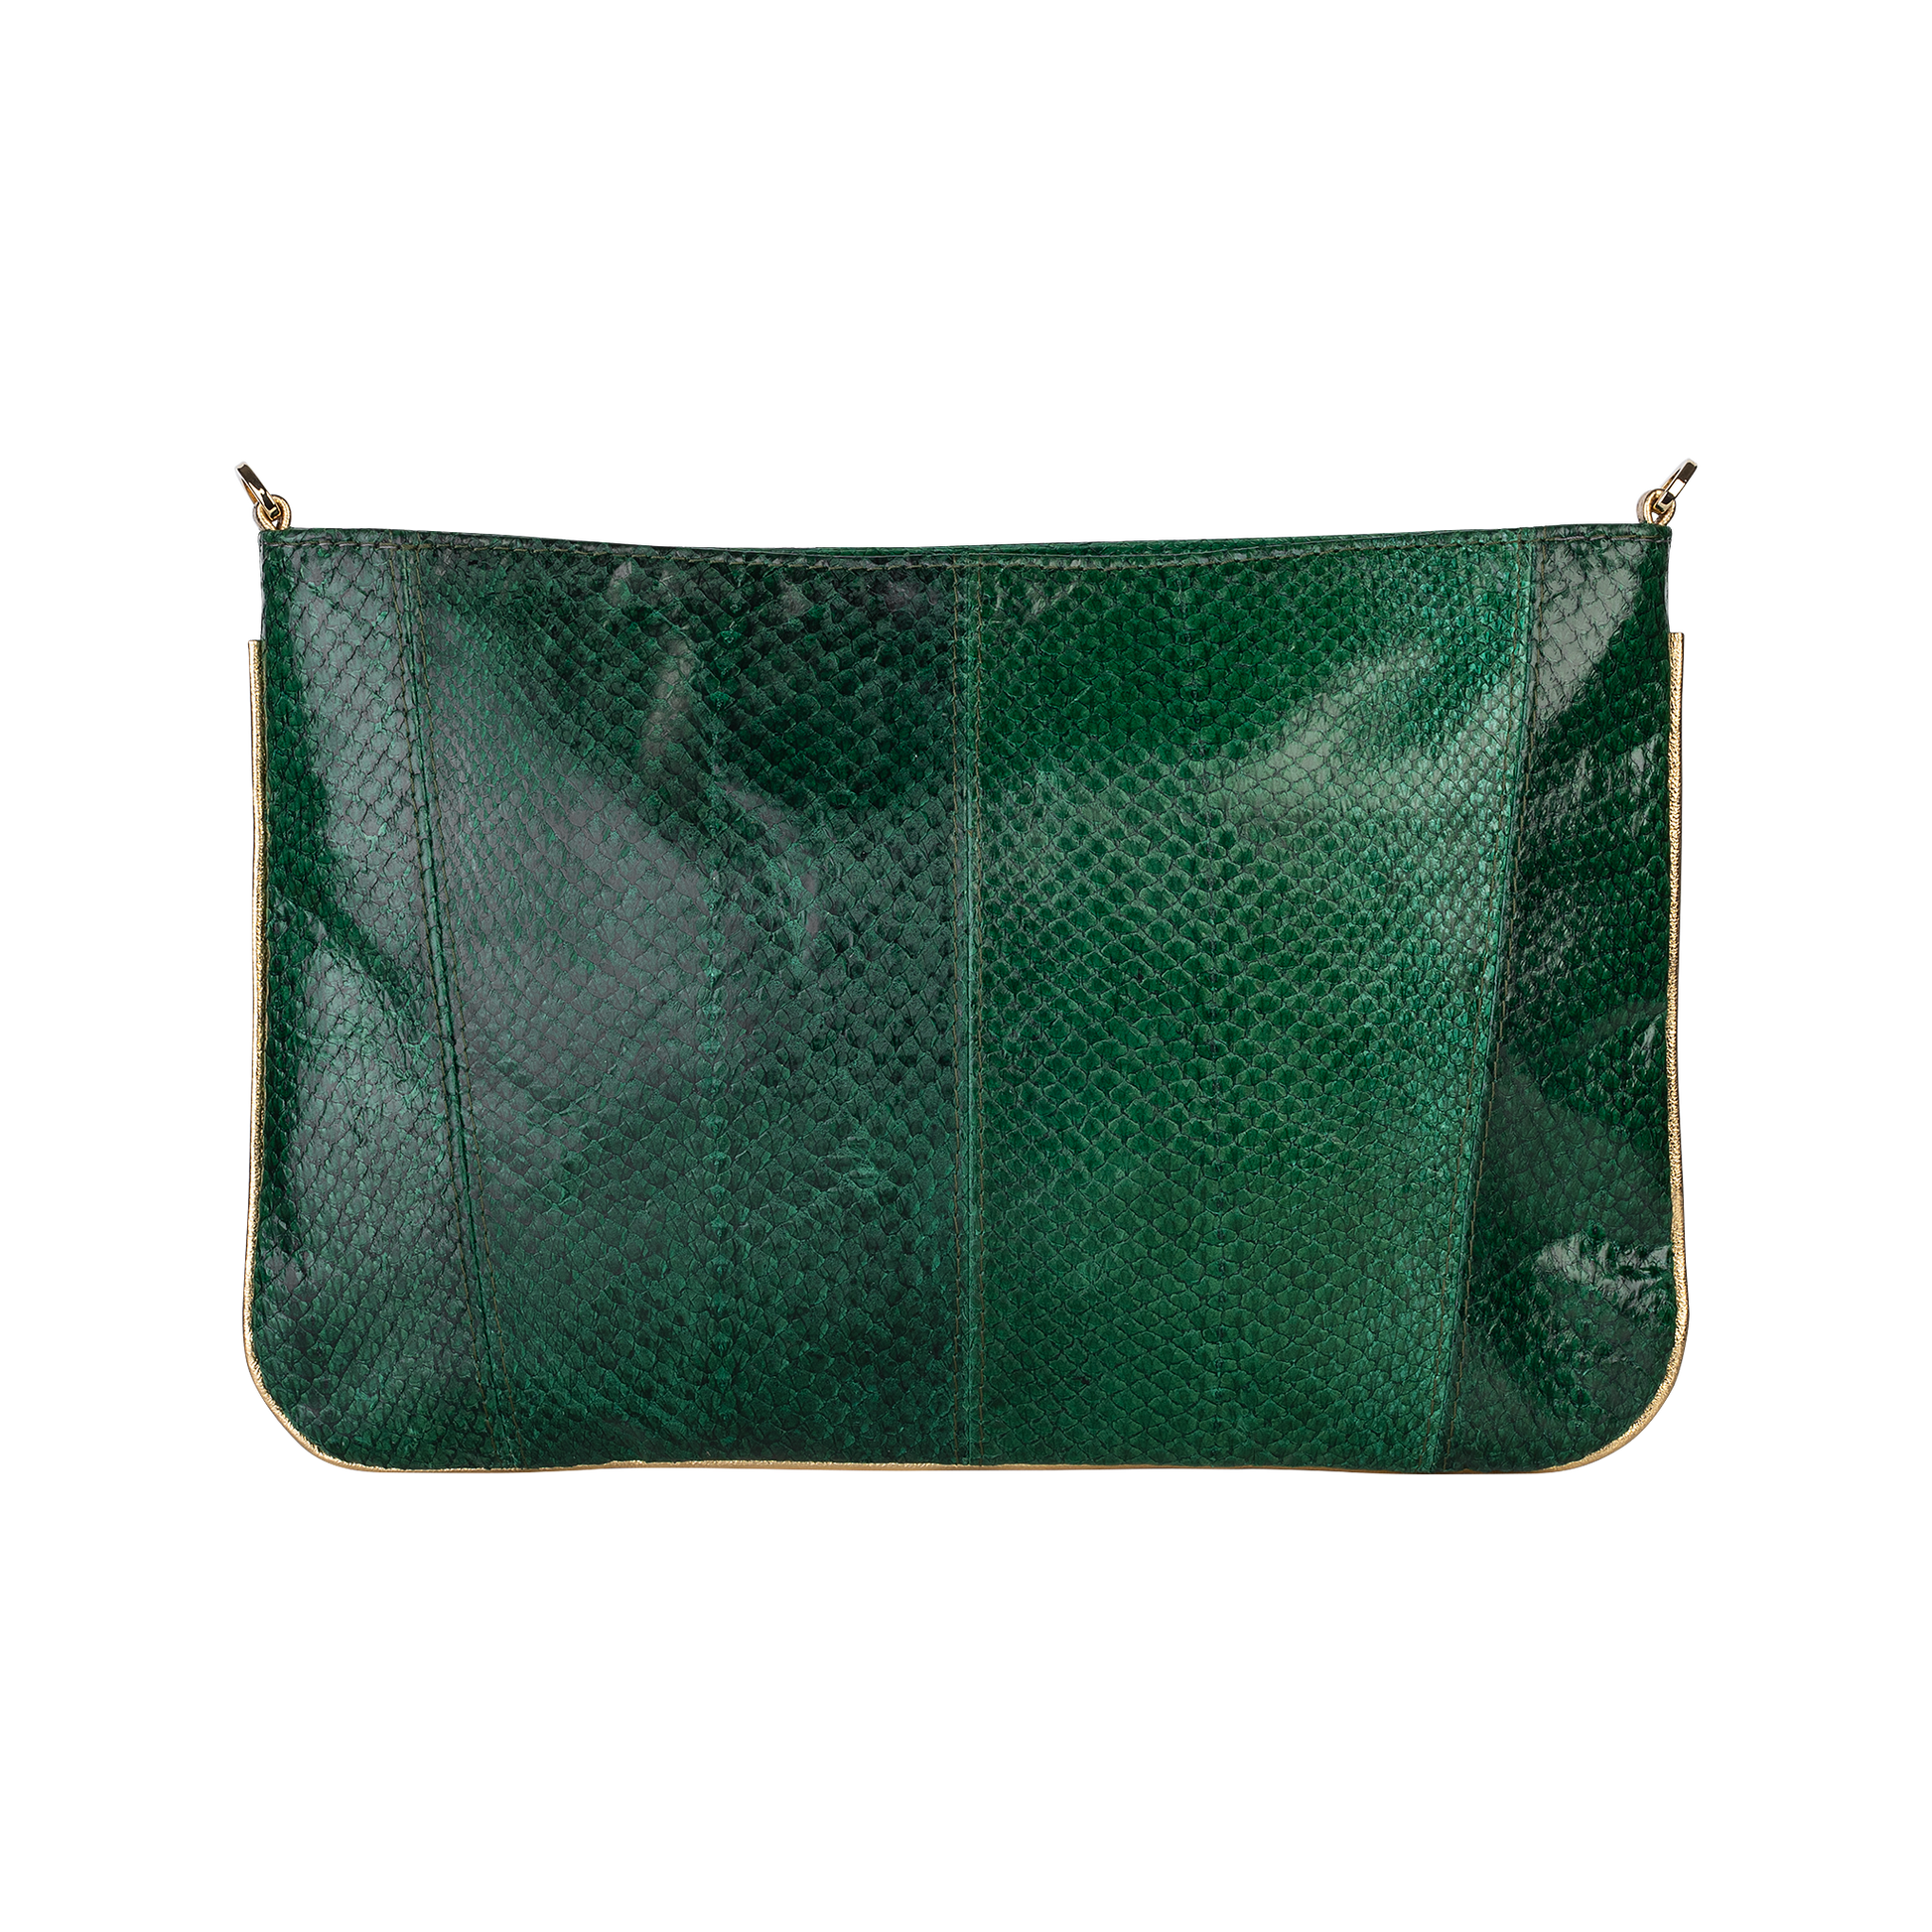 Kalannahka Kirjekuorilaukku vihreä Green fish leather Clutch